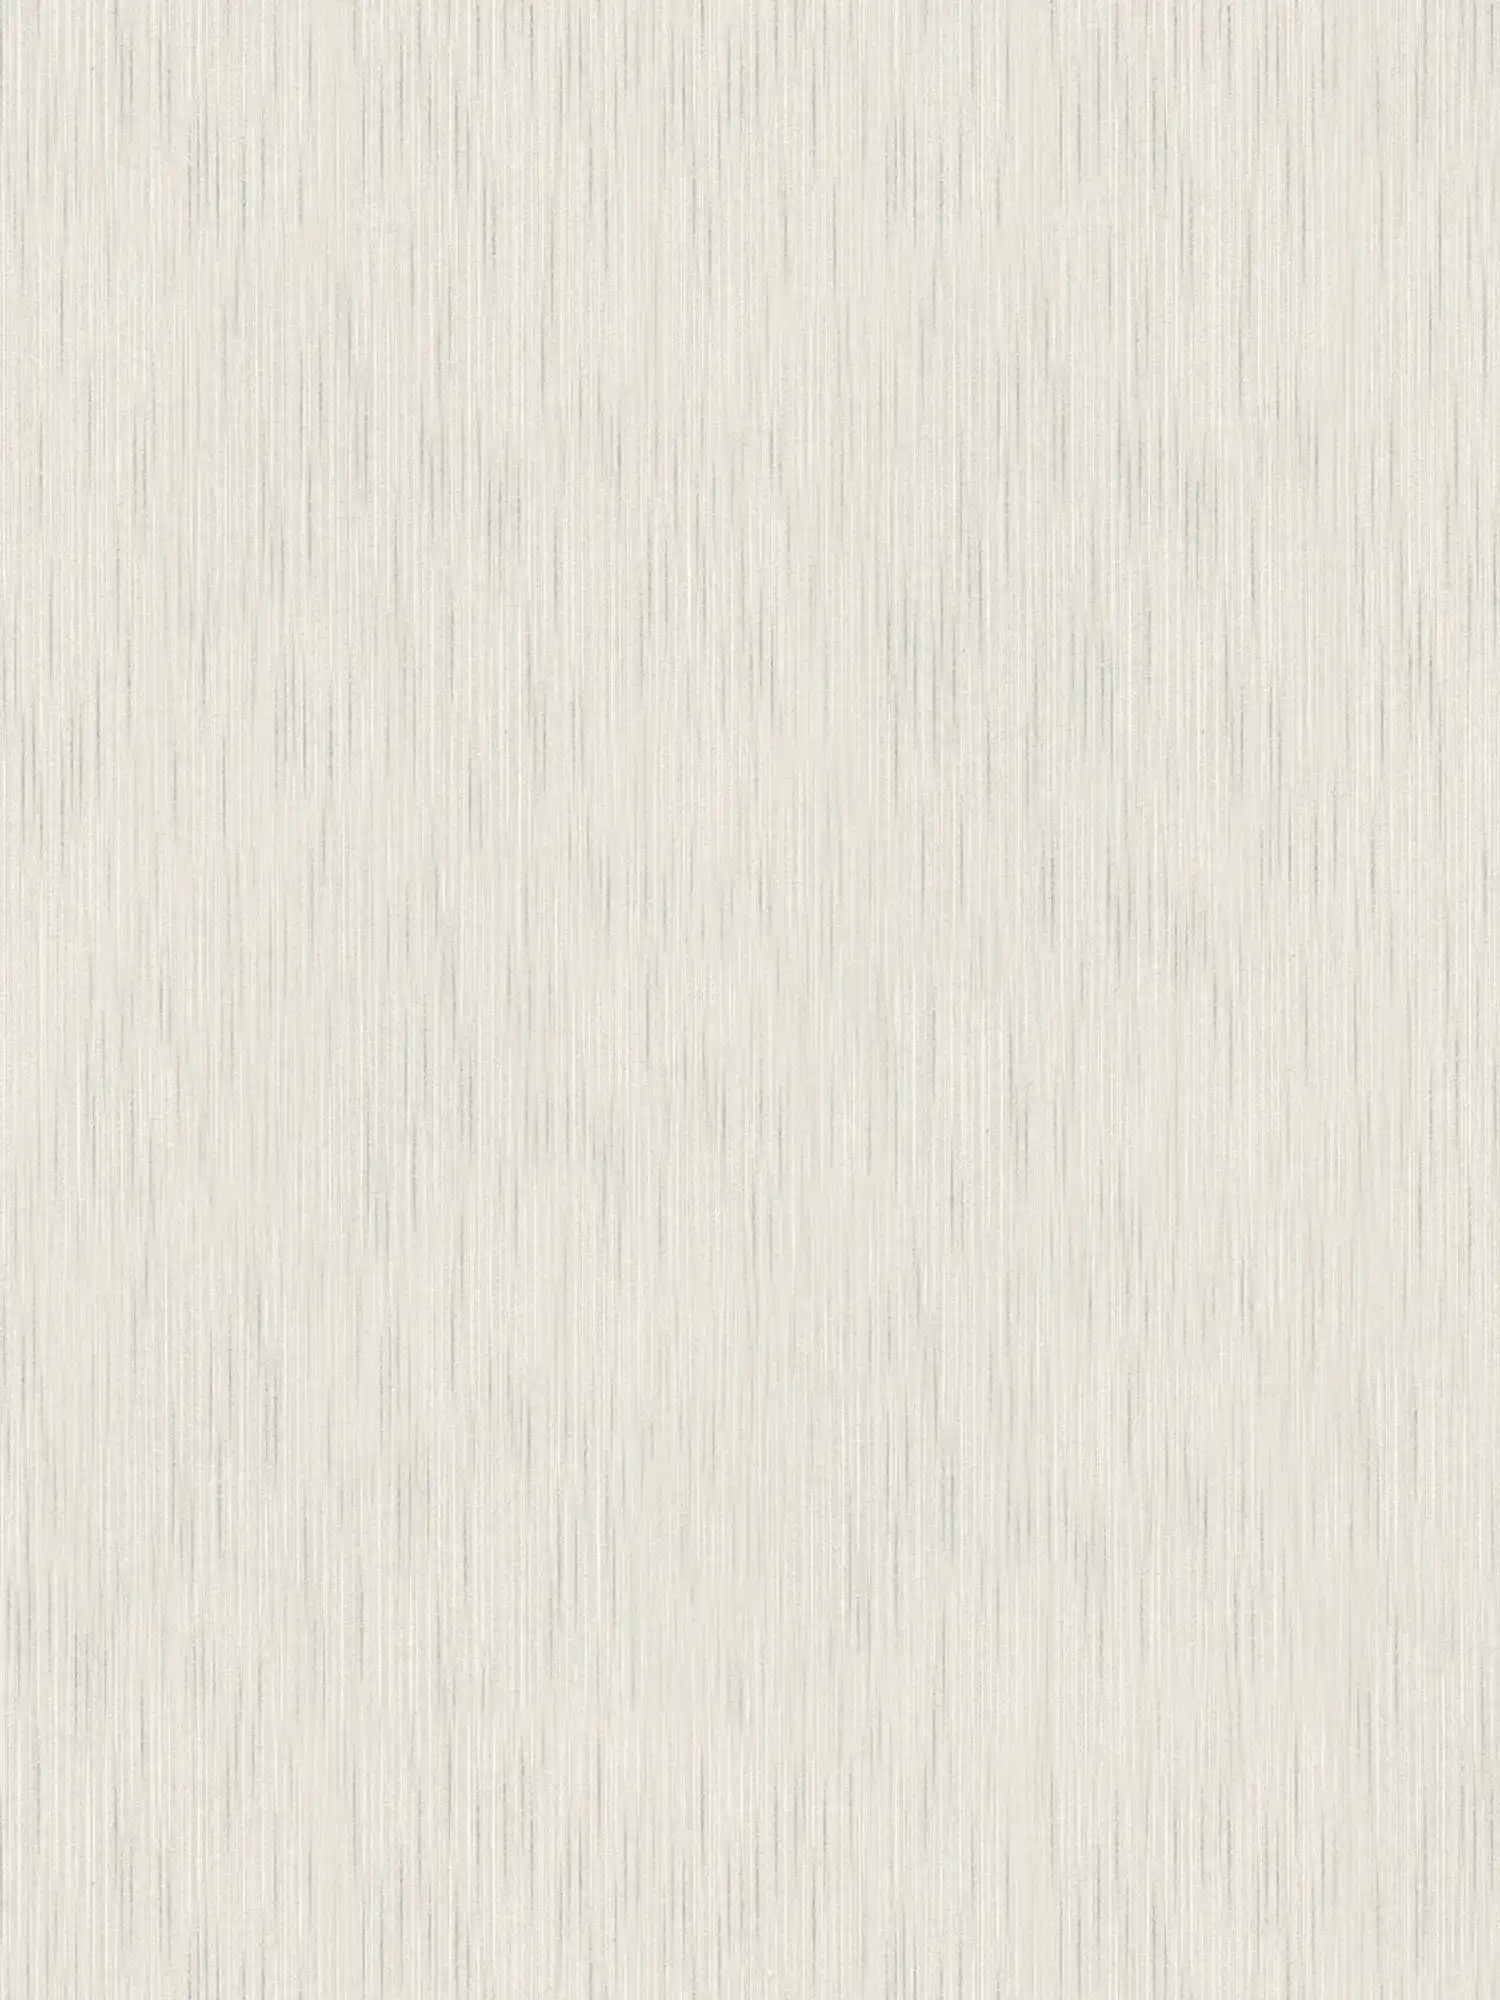 Papier peint satin gris clair avec structure textile & effet chiné
